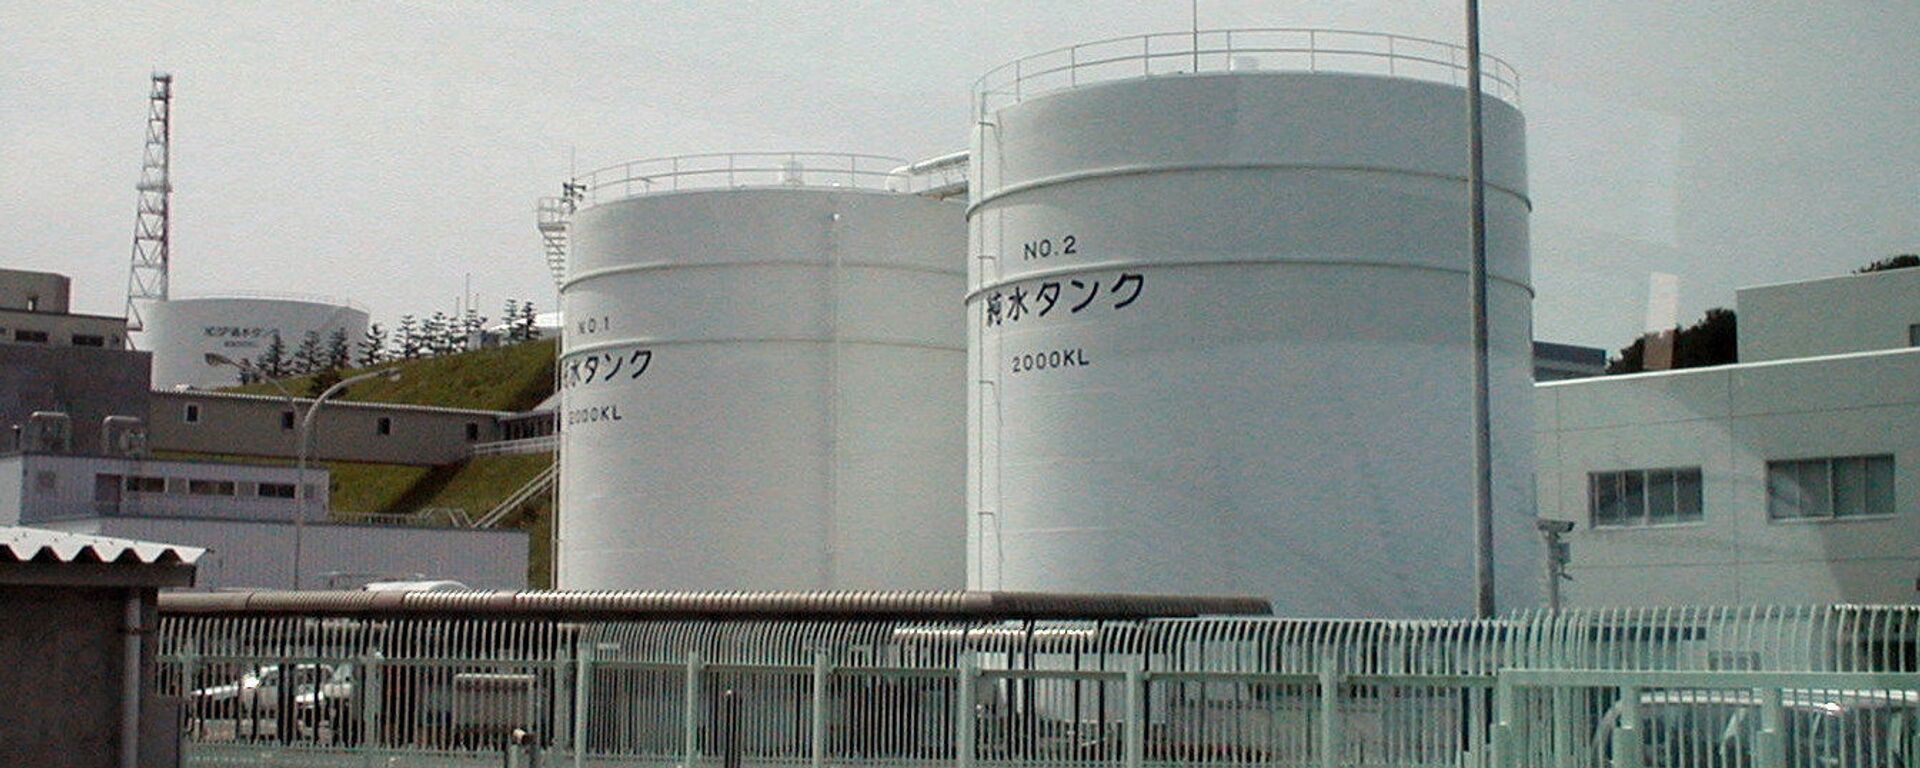 Nhà máy điện hạt nhân Fukushima-1 tại Nhật Bản được xây dựng vào những năm 1960. Vào thời điểm xảy ra thảm họa, đây là một trong những nhà máy vận hành lâu đời nhất, không có hệ thống an toàn chủ động và thụ động, như các nhà máy hiện đại. - Sputnik Việt Nam, 1920, 06.07.2023